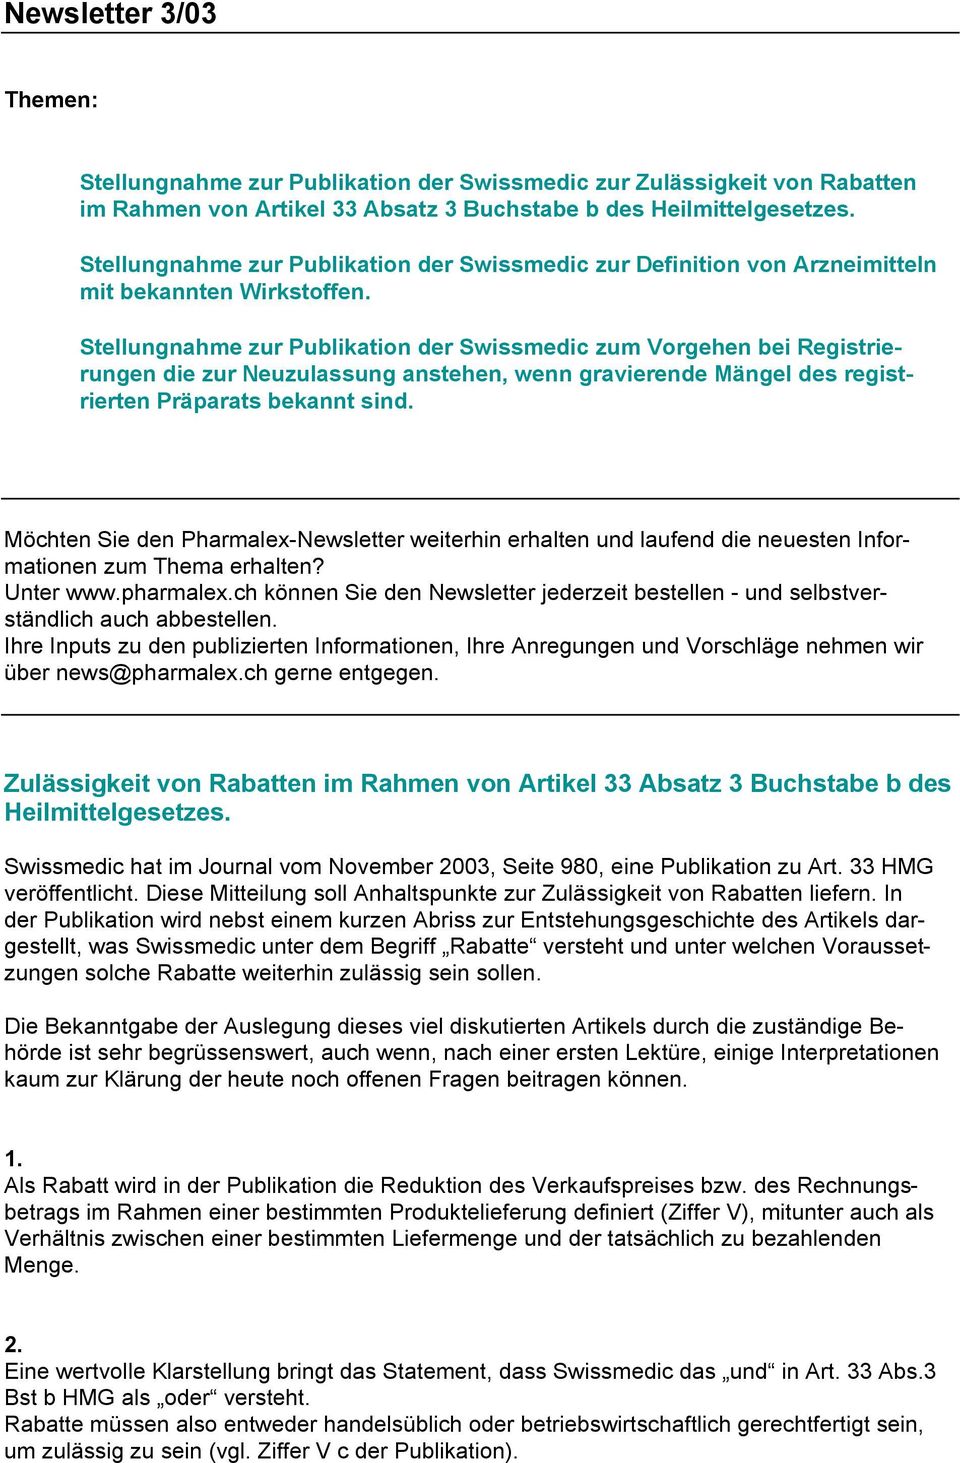 Stellungnahme zur Publikation der Swissmedic zum Vorgehen bei Registrierungen die zur Neuzulassung anstehen, wenn gravierende Mängel des registrierten Präparats bekannt sind.